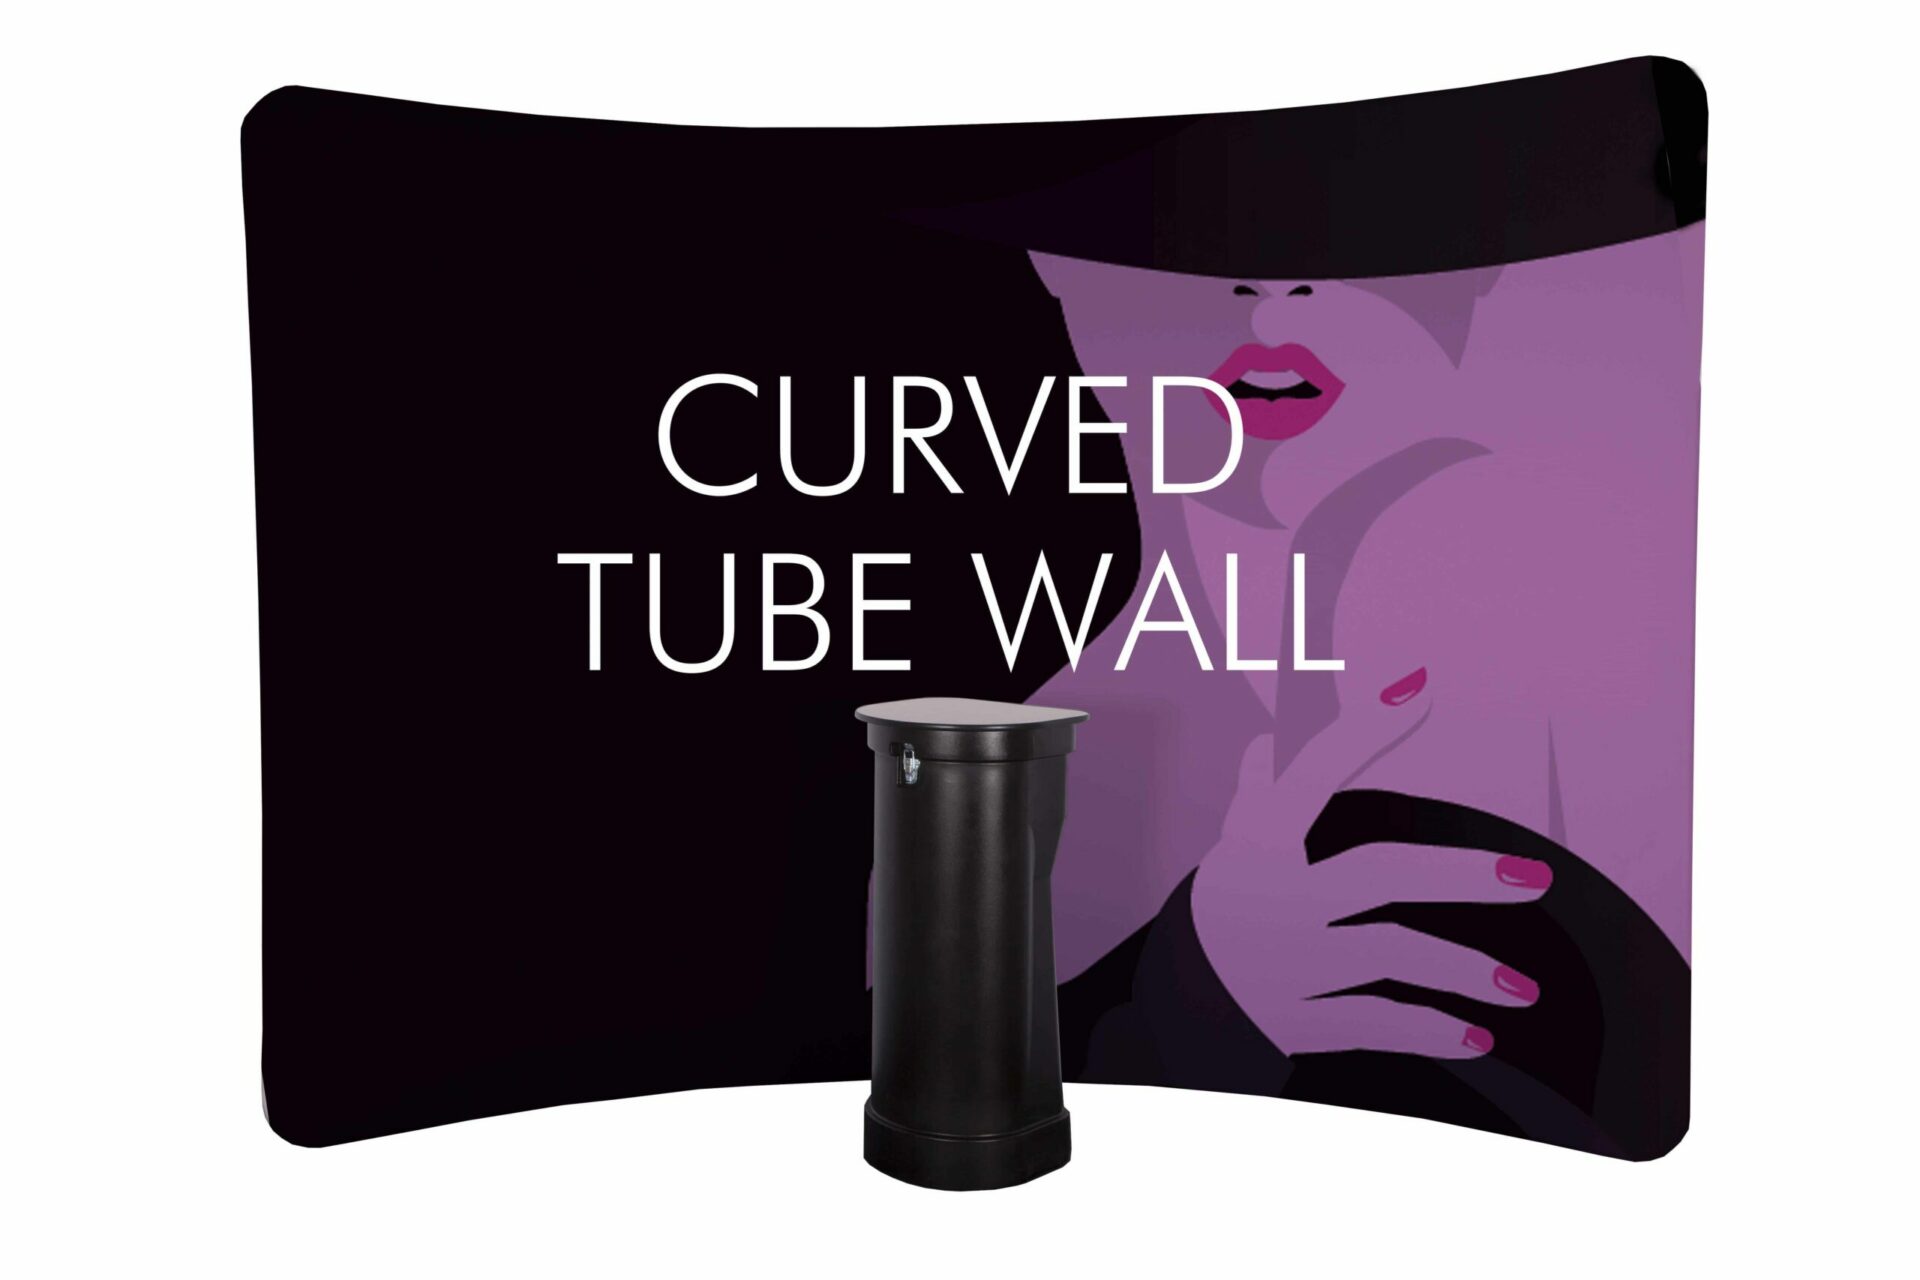 VD-TUB-Mur tube incurvé tissus